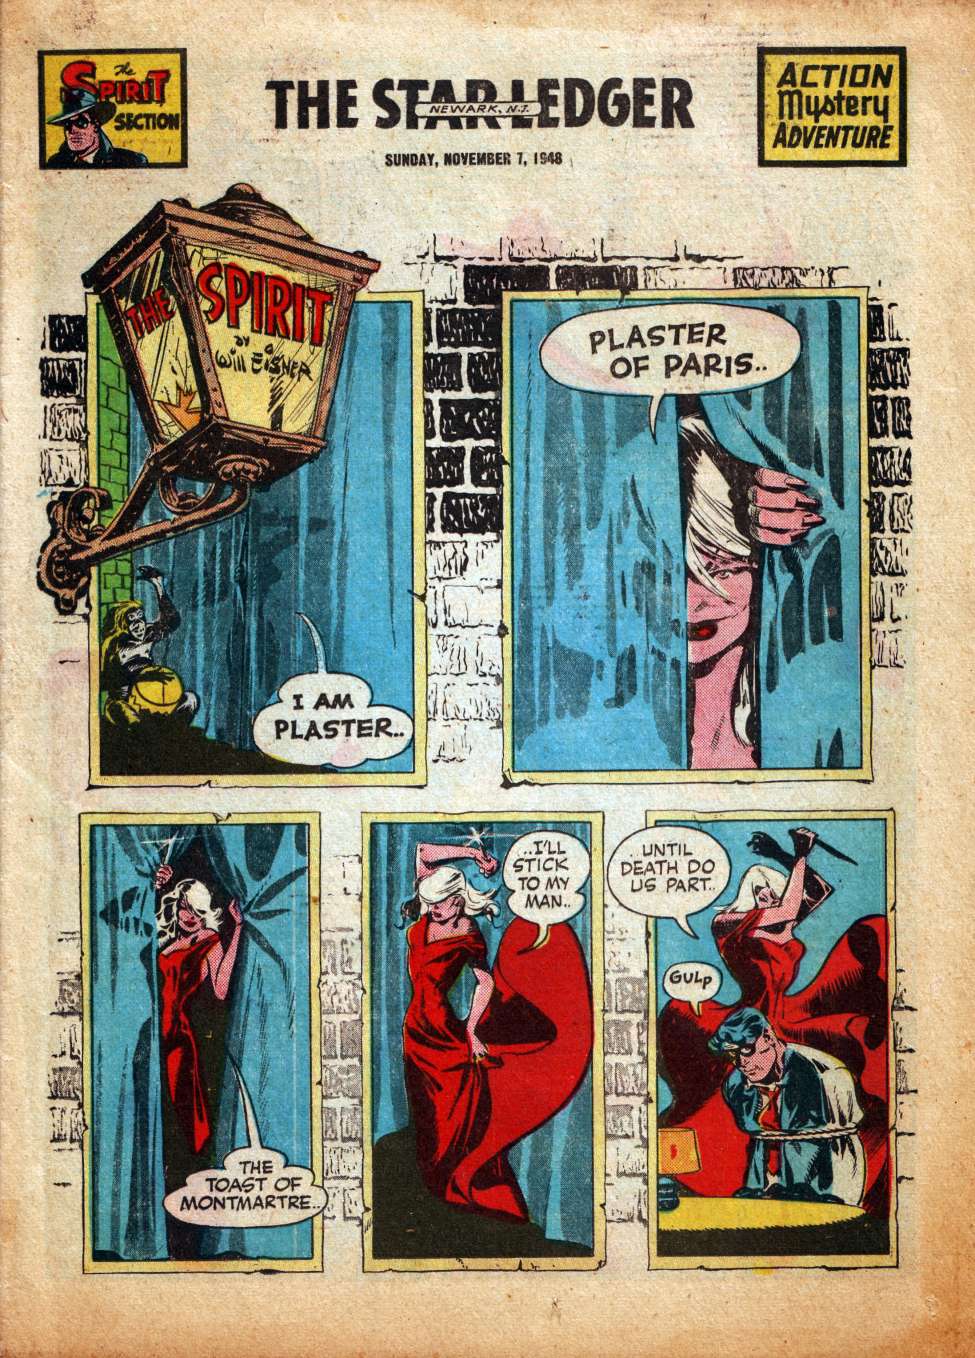 Comic Book Cover For The Spirit (1948-11-07) - Star-Ledger